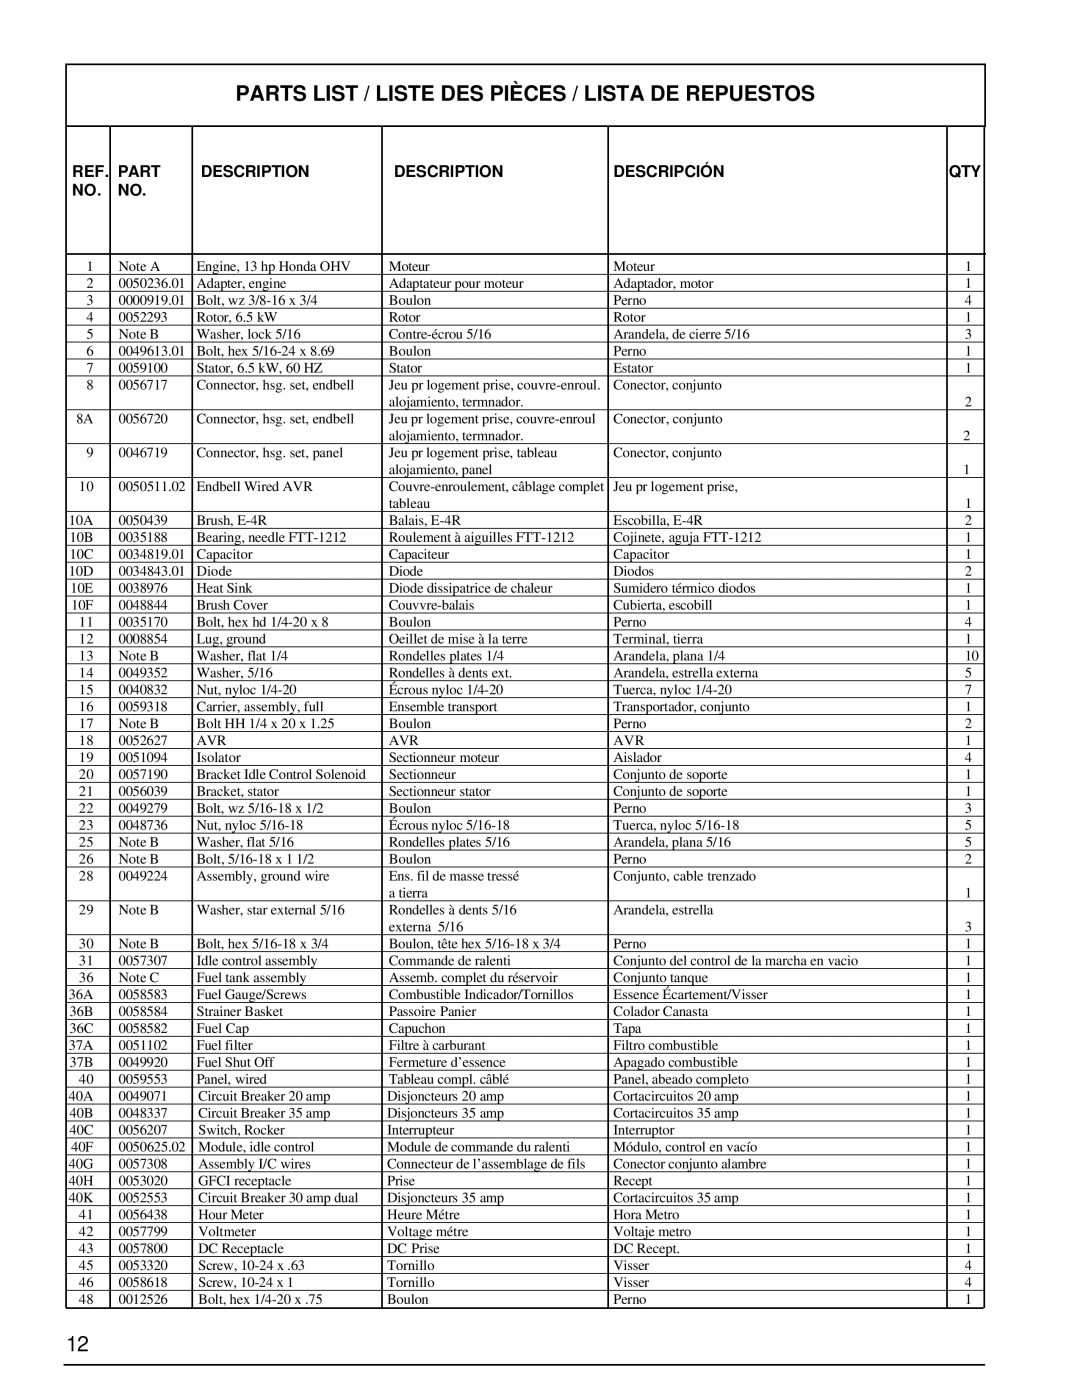 Powermate PL0496504.17 manual Parts List / Liste Des Pièces / Lista De Repuestos, Description, Descripción 